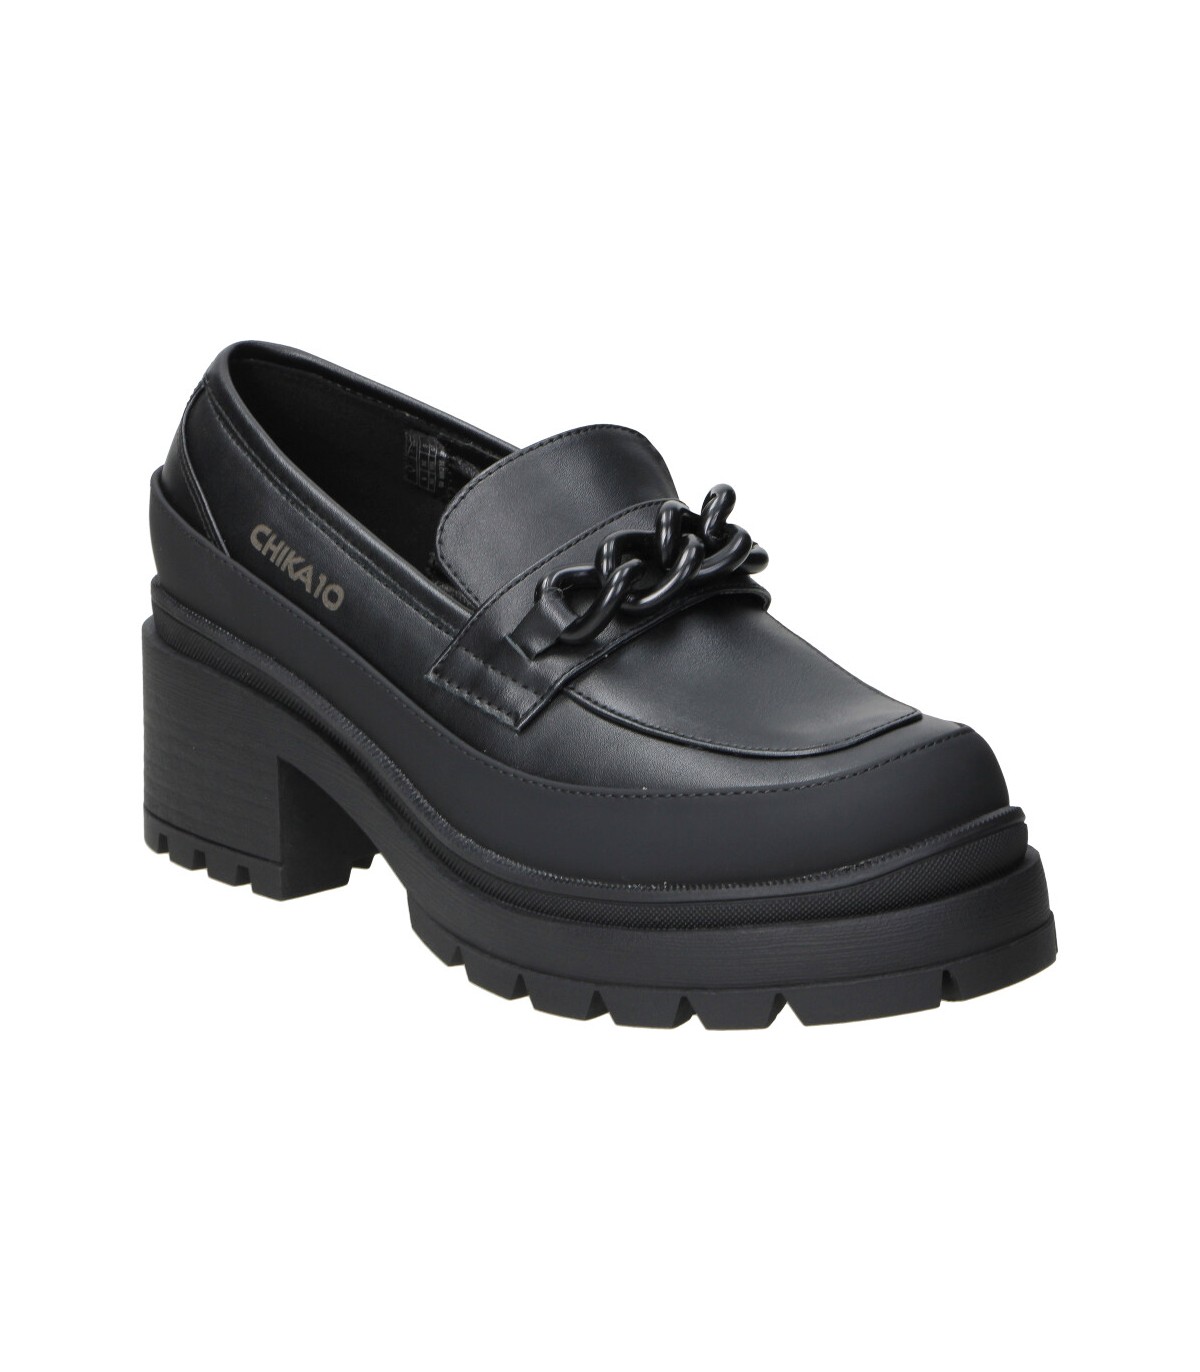 Zapatos negros con tacón de mujer CHK10 online en